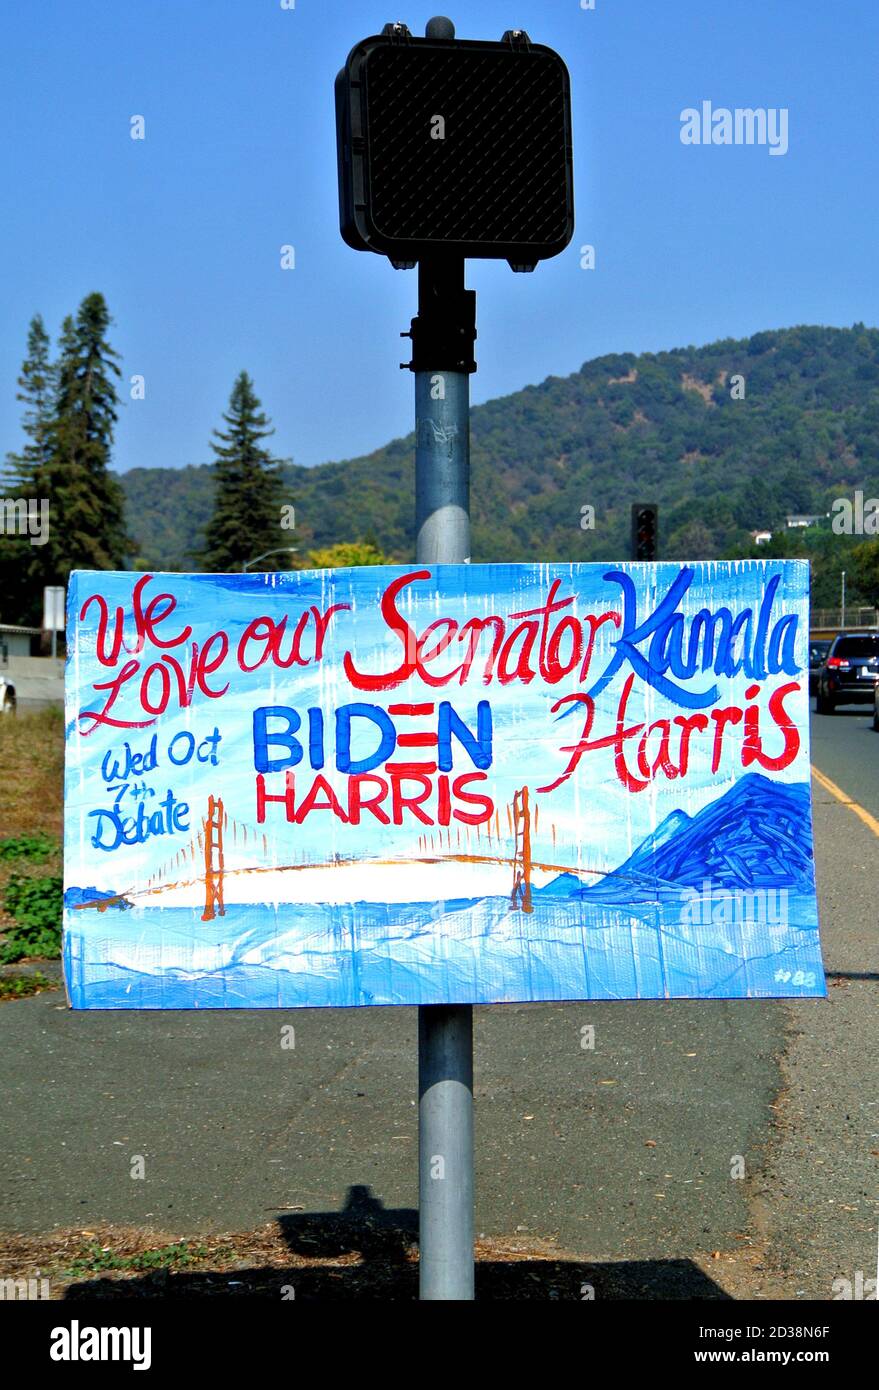 Biden Harris campagna segni mostra da artista volontario lungo Marin County Freeway in california usa sollecitando il voto per il presidente e. vicepresidente Foto Stock